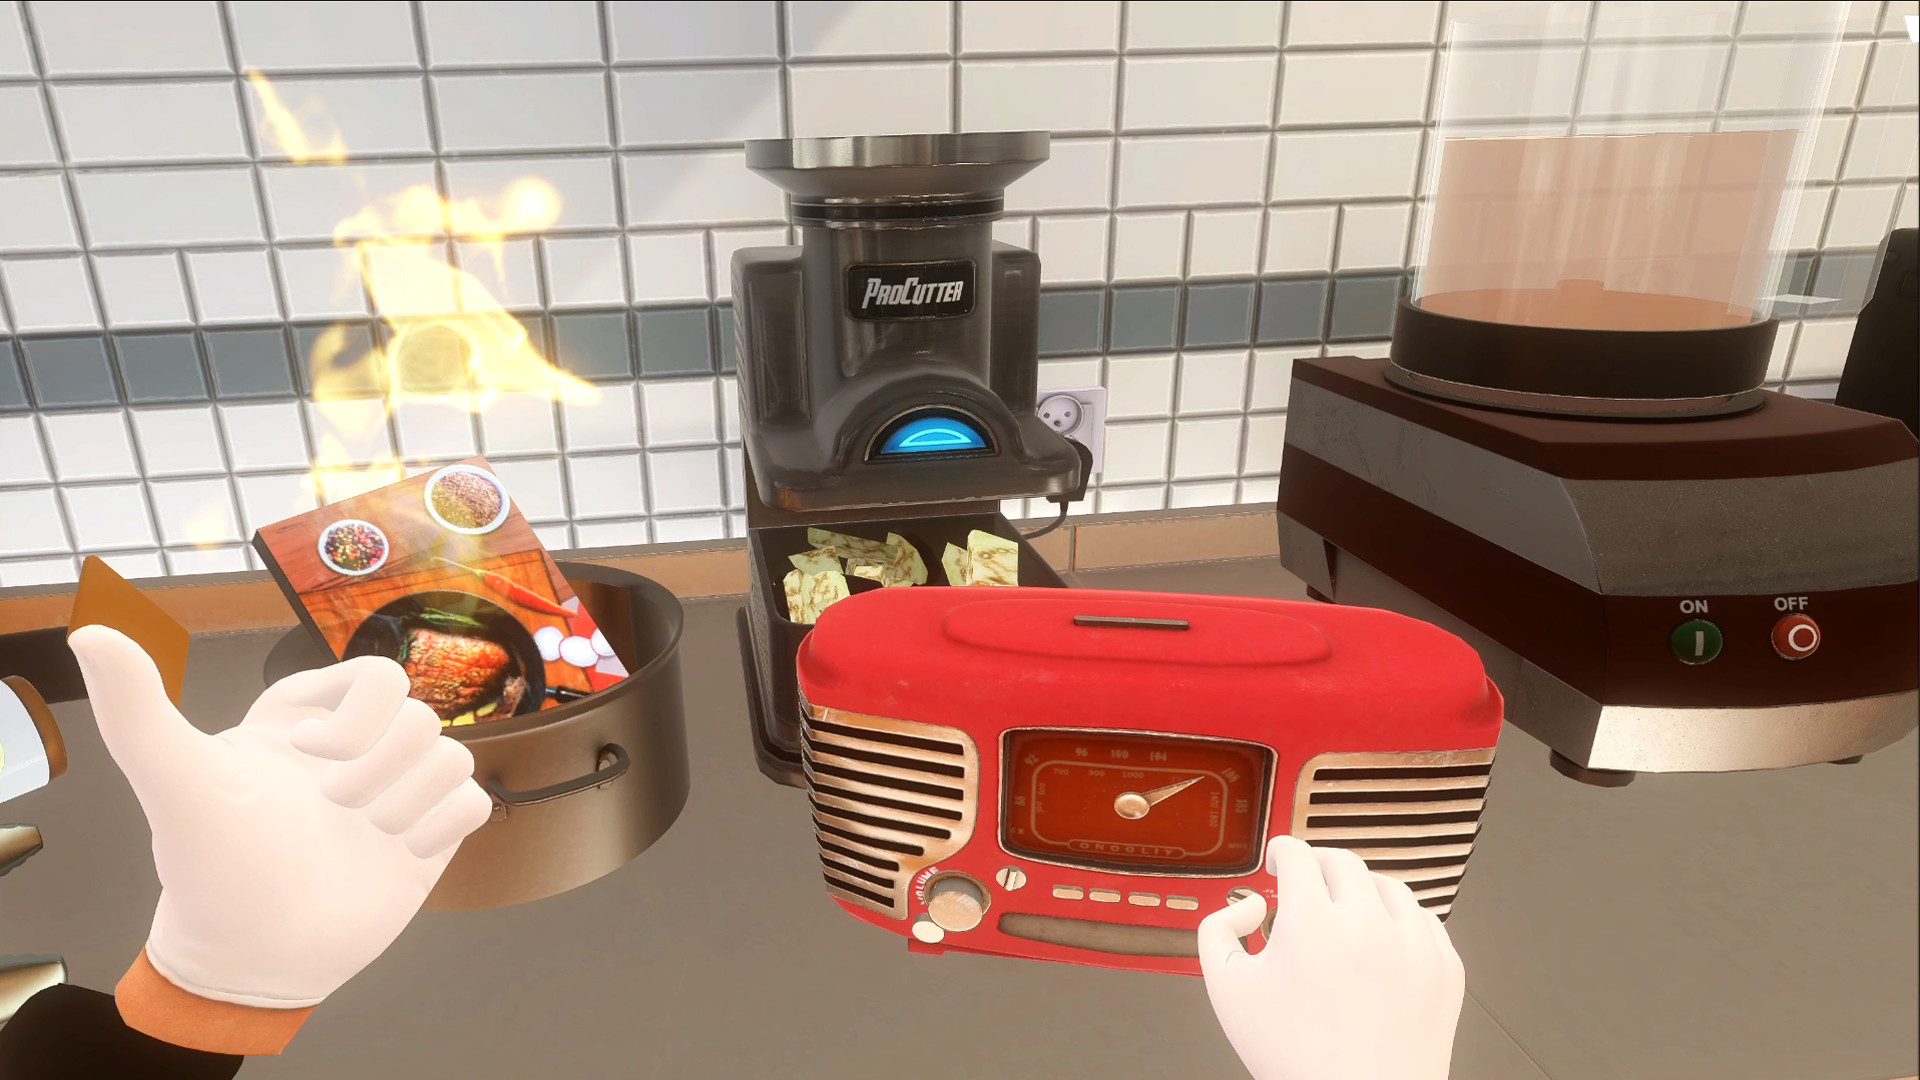 10 Melhores Jogos VR Simulador de Cozinha 